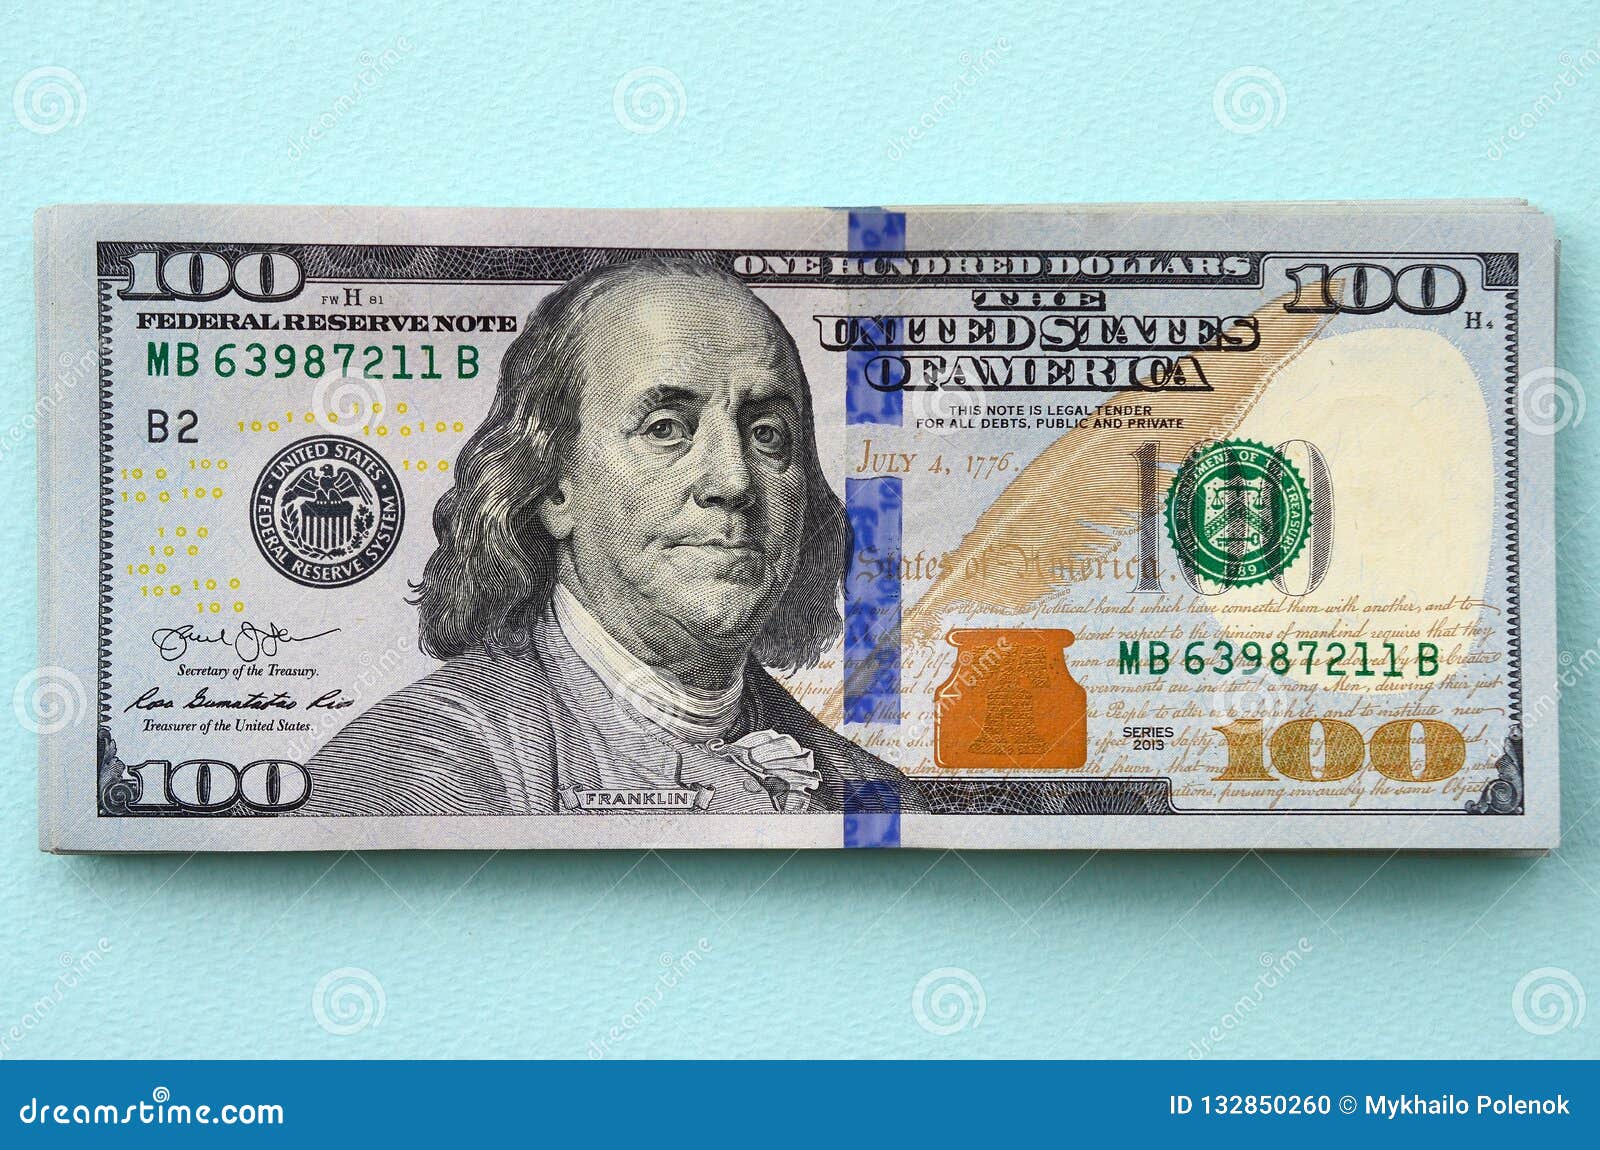 как перевести из рублей в доллары в steam фото 89